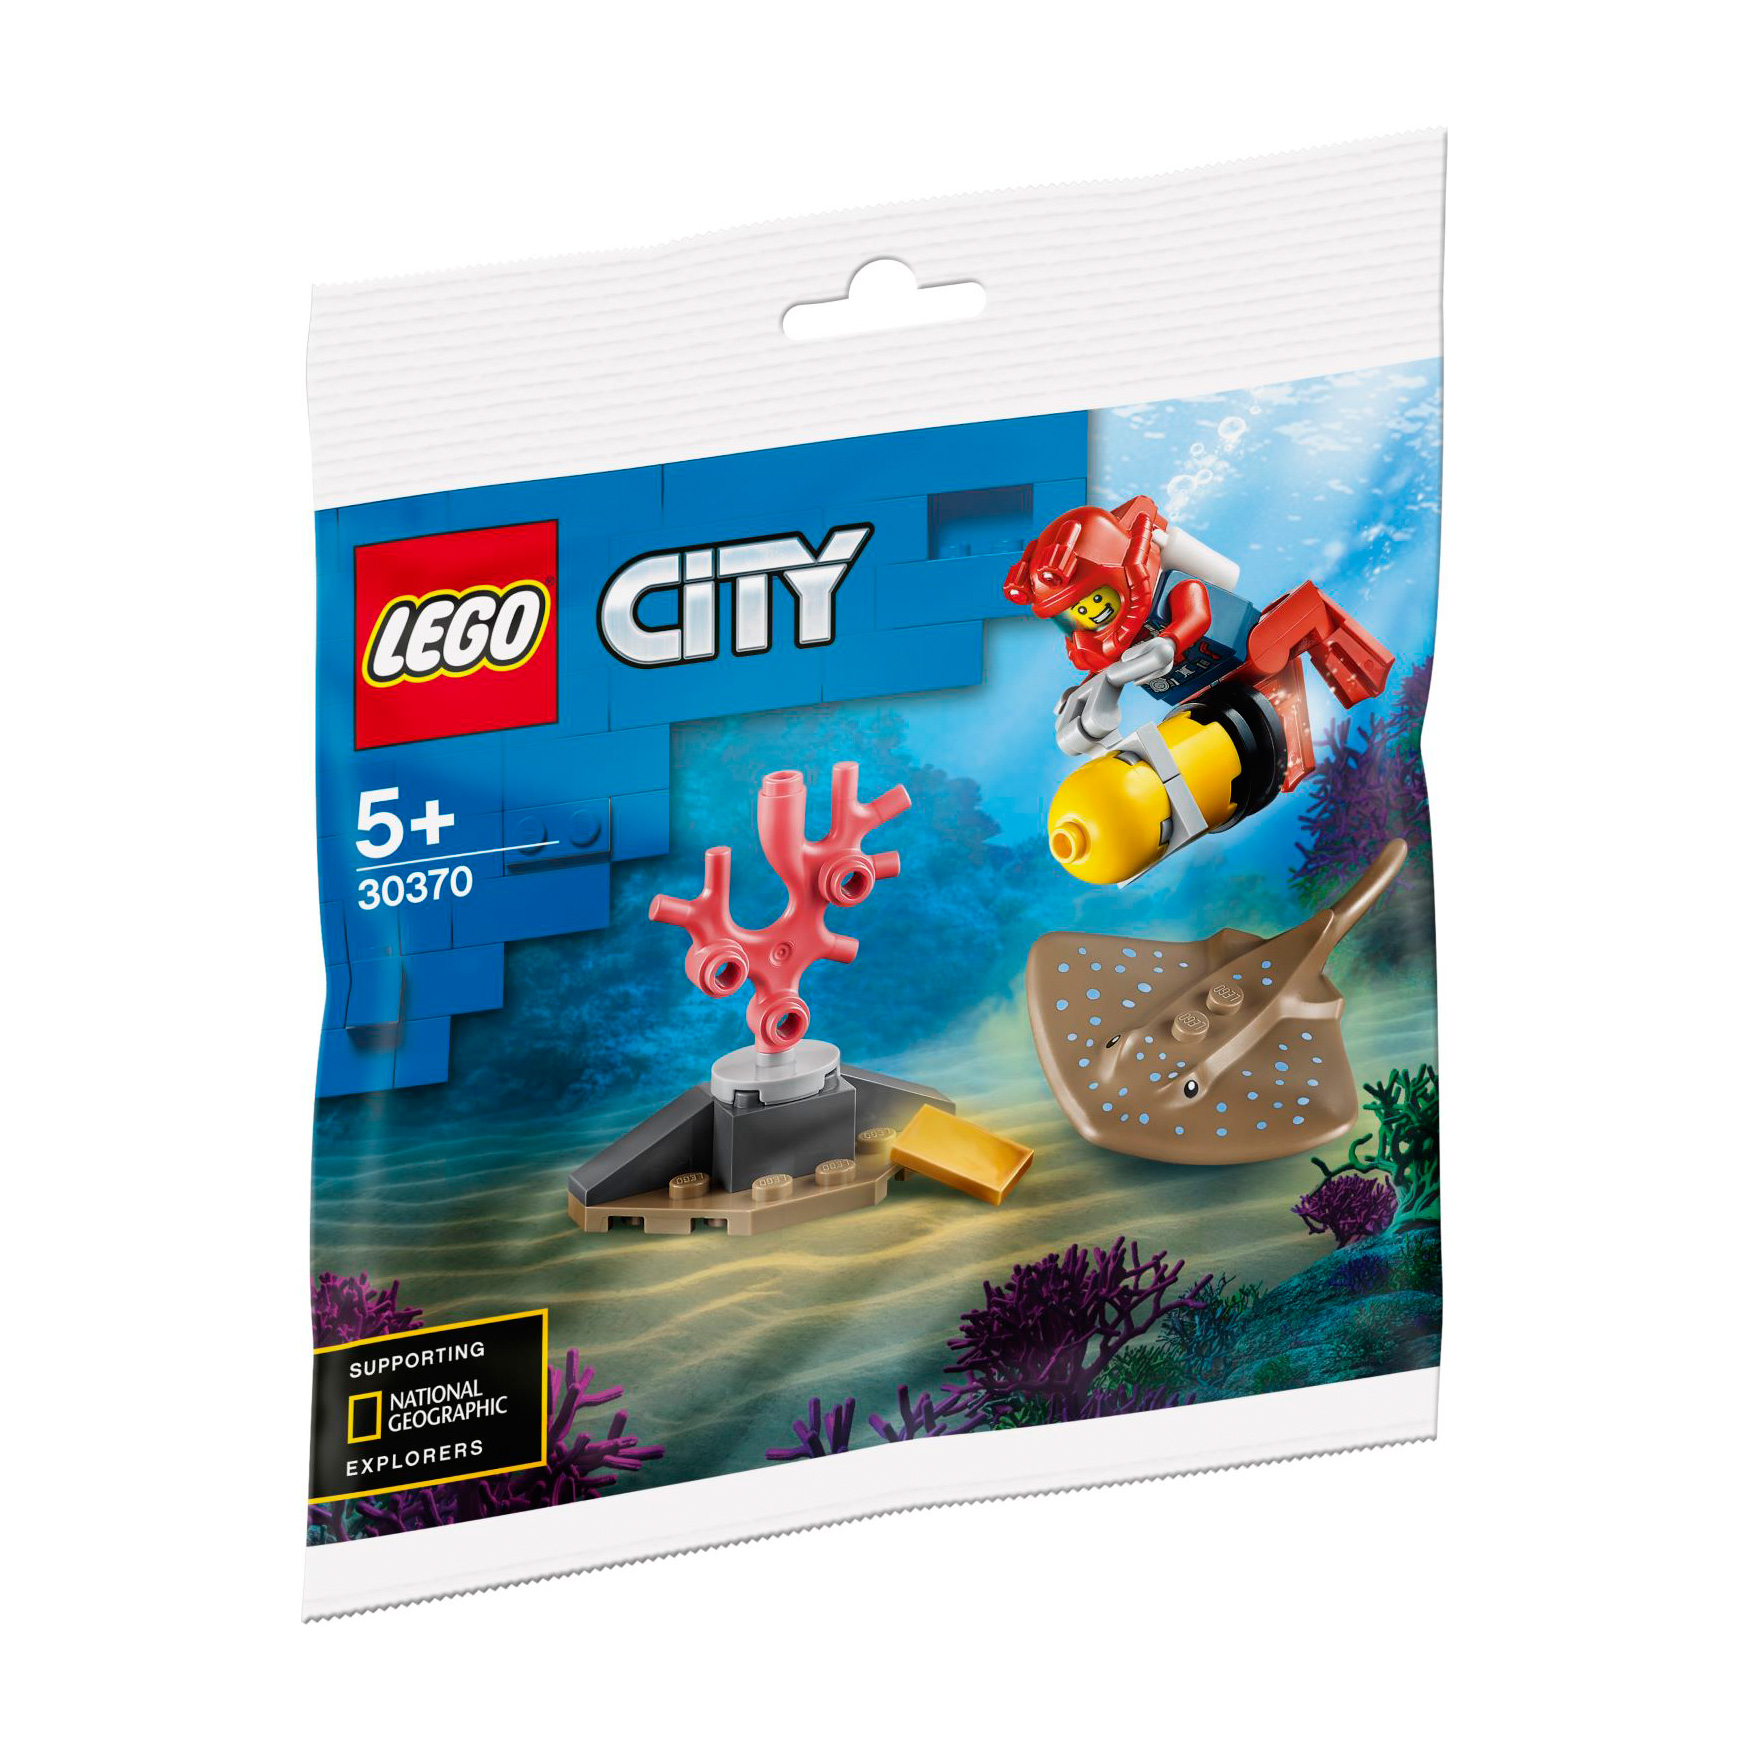 LEGO® CITY 30370 Tiefseetaucher günstig kaufen | brickstore.at